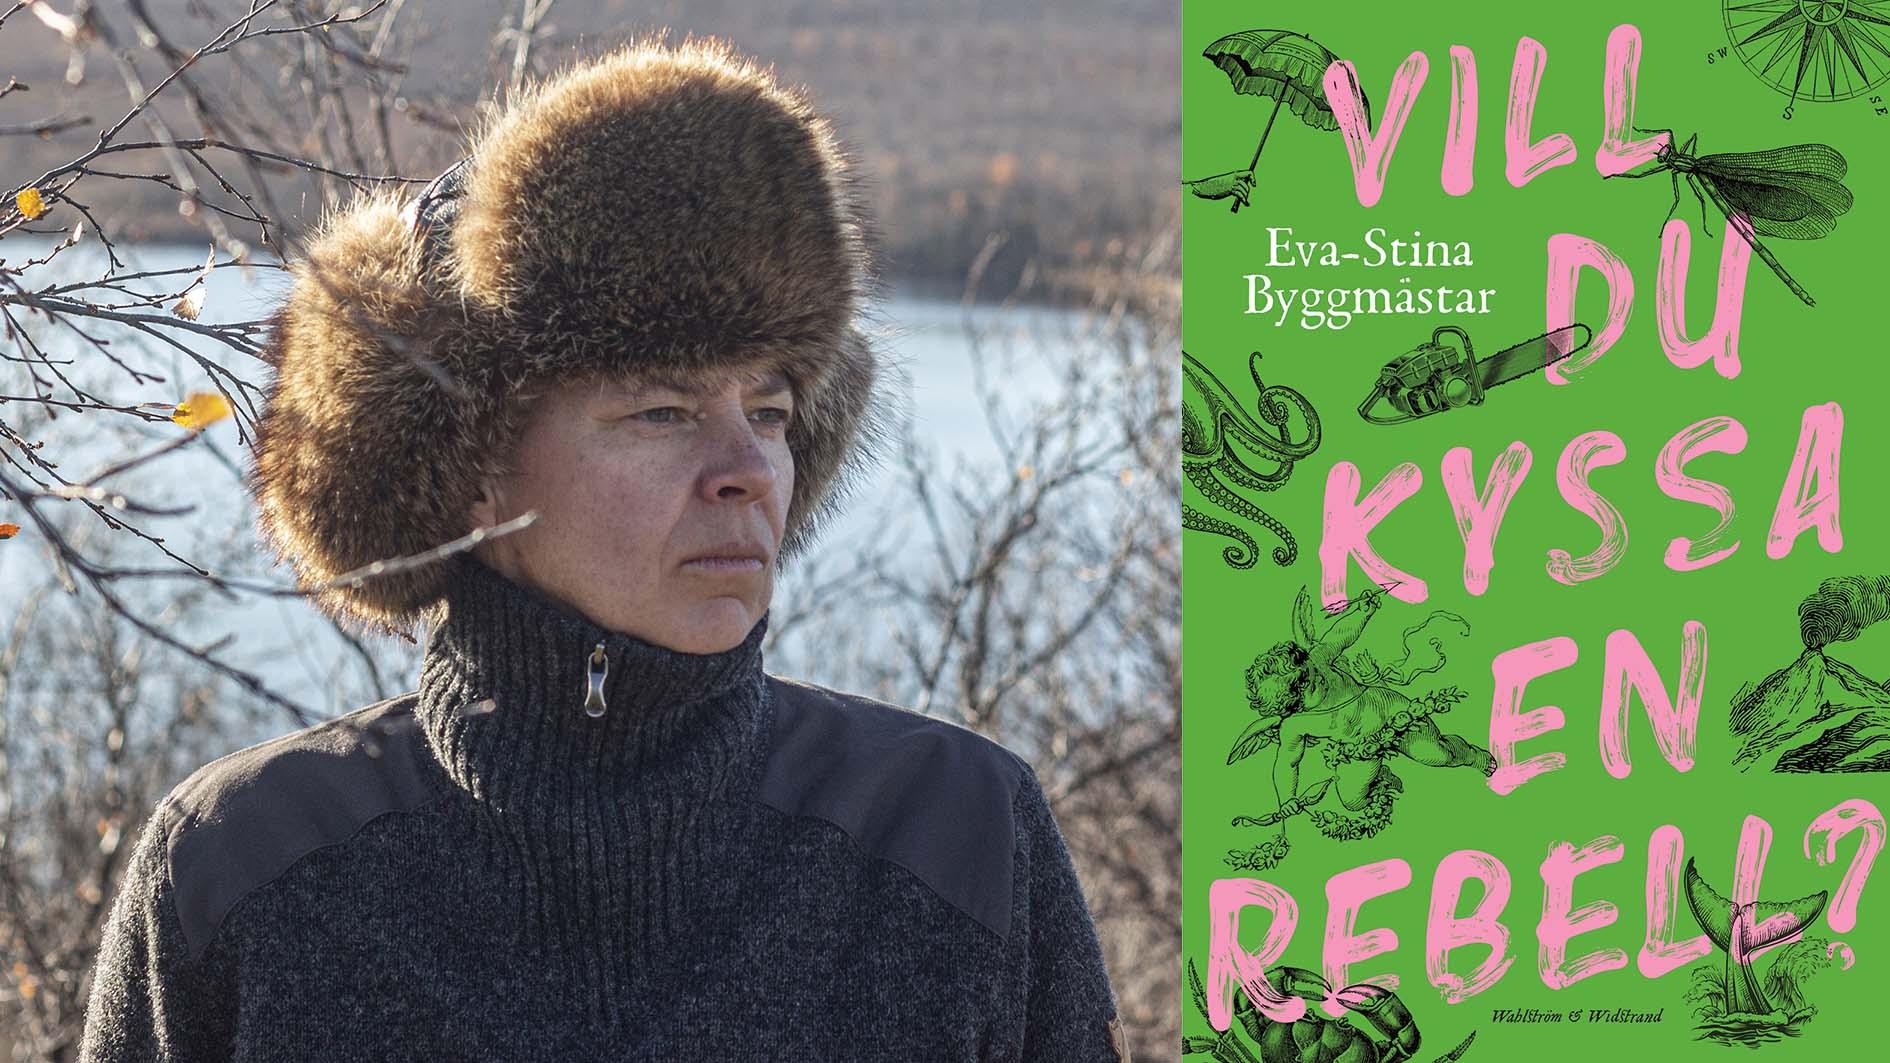 Eva-Stina Byggmästar (född 1967), är uppvuxen och bosatt i Finland. Hon debuterade 1986 och har sedan dess publicerat många hyllade diktsamlingar. Hon är nu aktuell med ”Vill du kyssa en rebell?”.